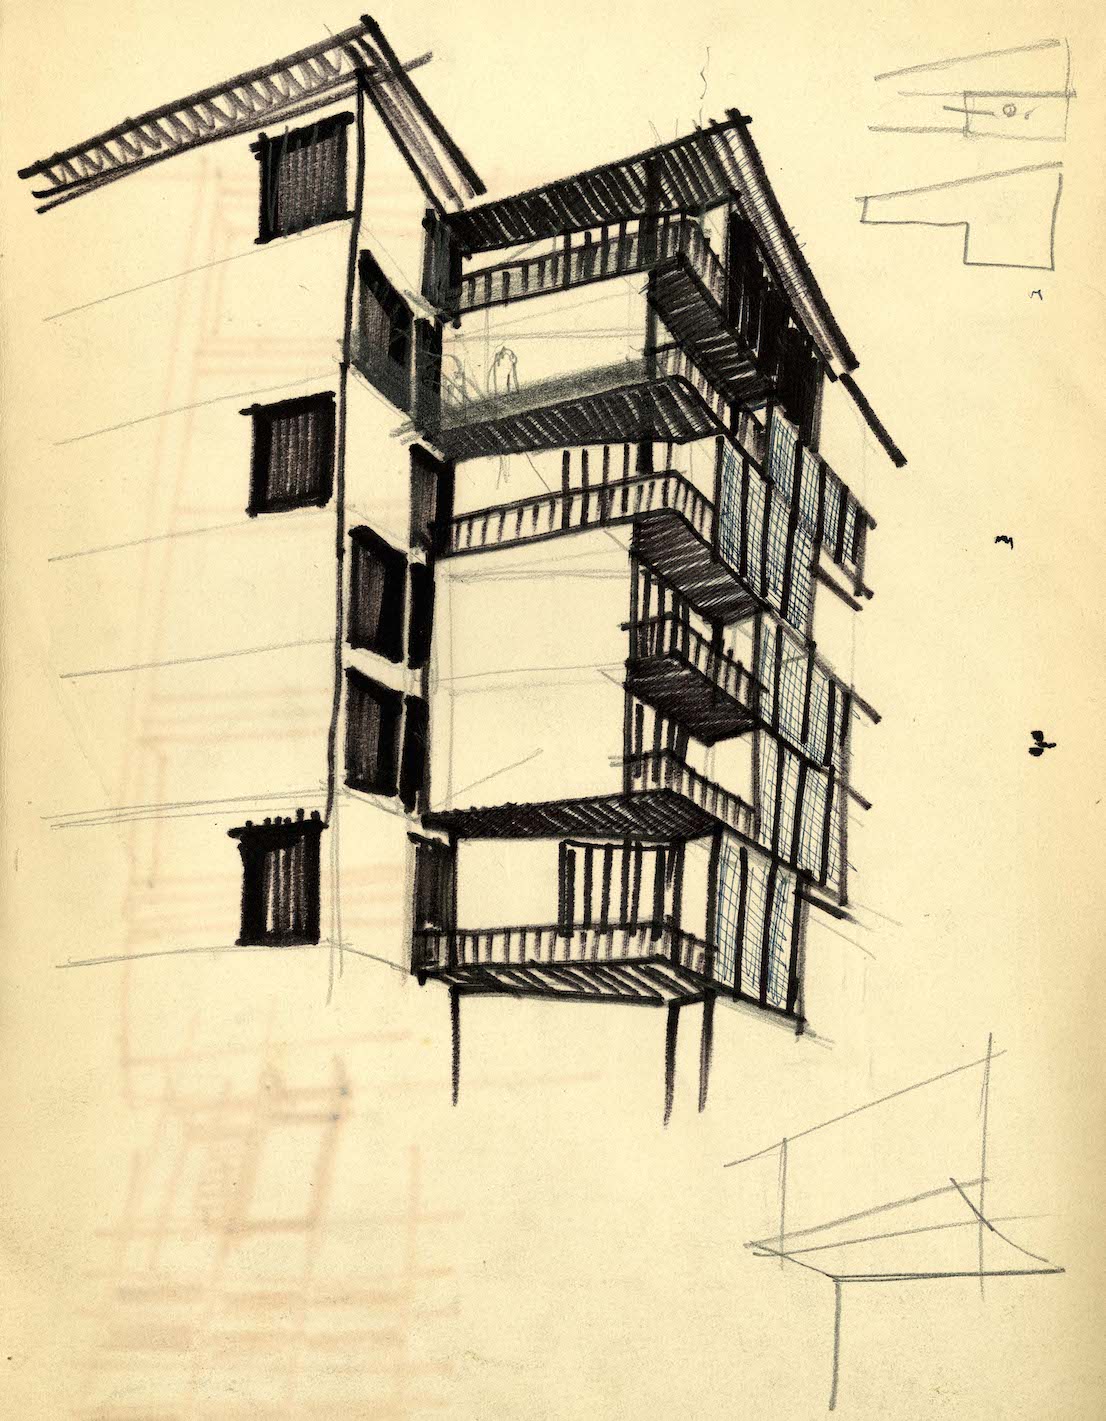 Torre al Parco Sempione, via Revere 2, 1953/56, progetto di Vico Magistretti con F. Longoni. Schizzo. Coutesy: Archivio Studio Magistretti